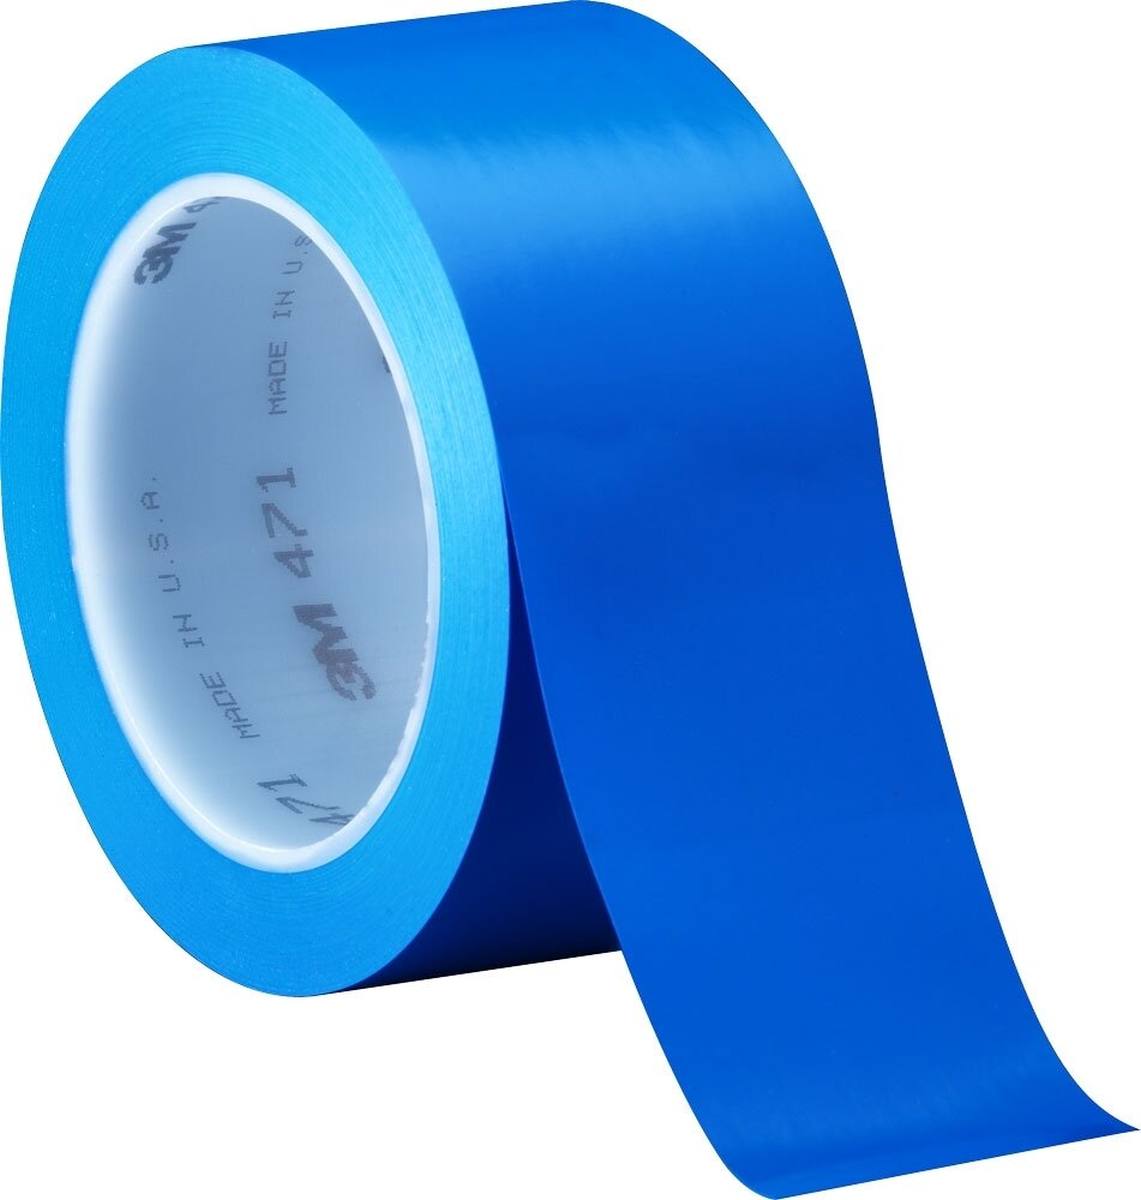 Nastro adesivo 3M in PVC morbido 471 F, blu, 50 mm x 33 m, 0,13 mm, confezionato singolarmente e in modo pratico